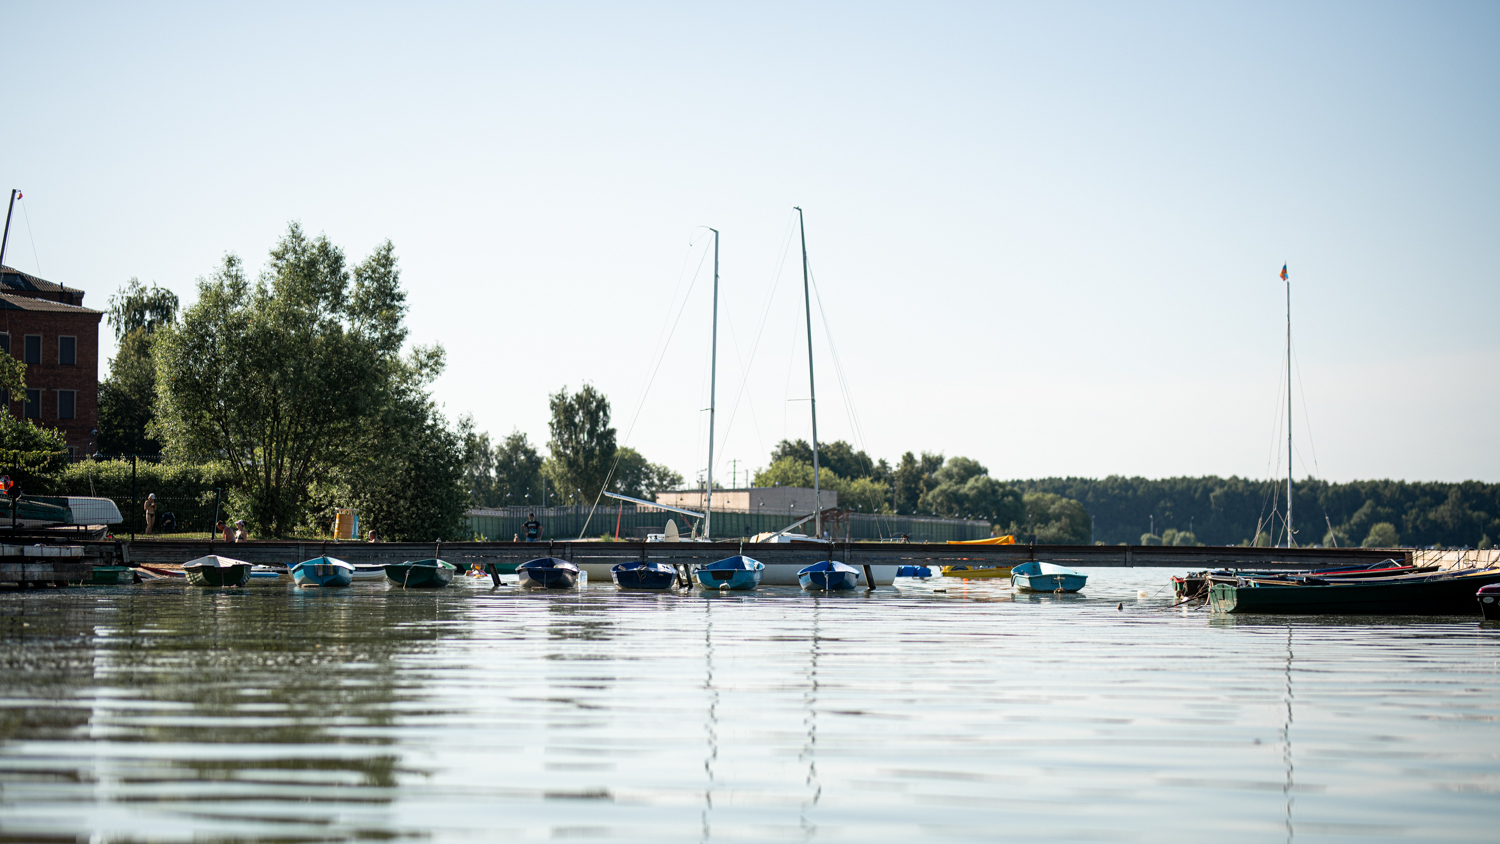 Отдых на катерах на озере Сенеж особо популярен среди романтических пар. Фотография